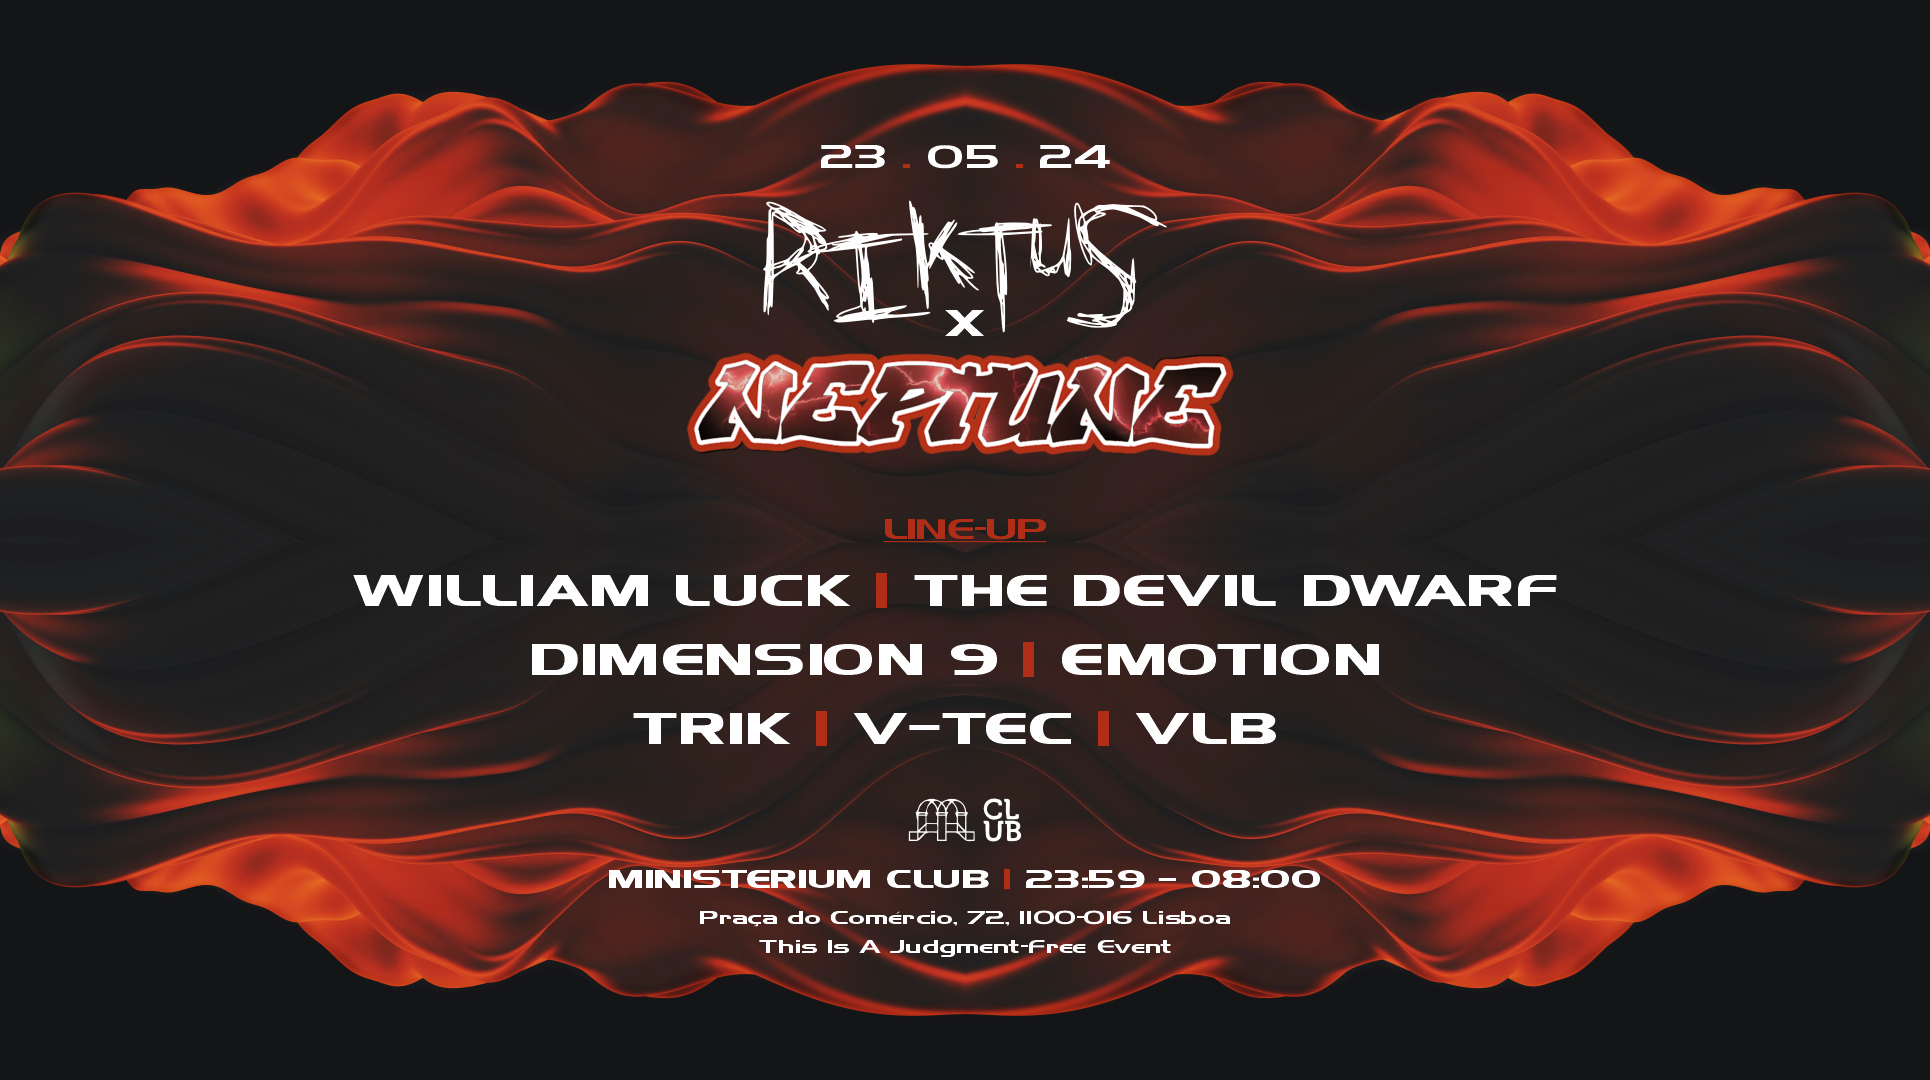 Riktus x Neptune with William Luck, The Devil Dwarf - フライヤー表